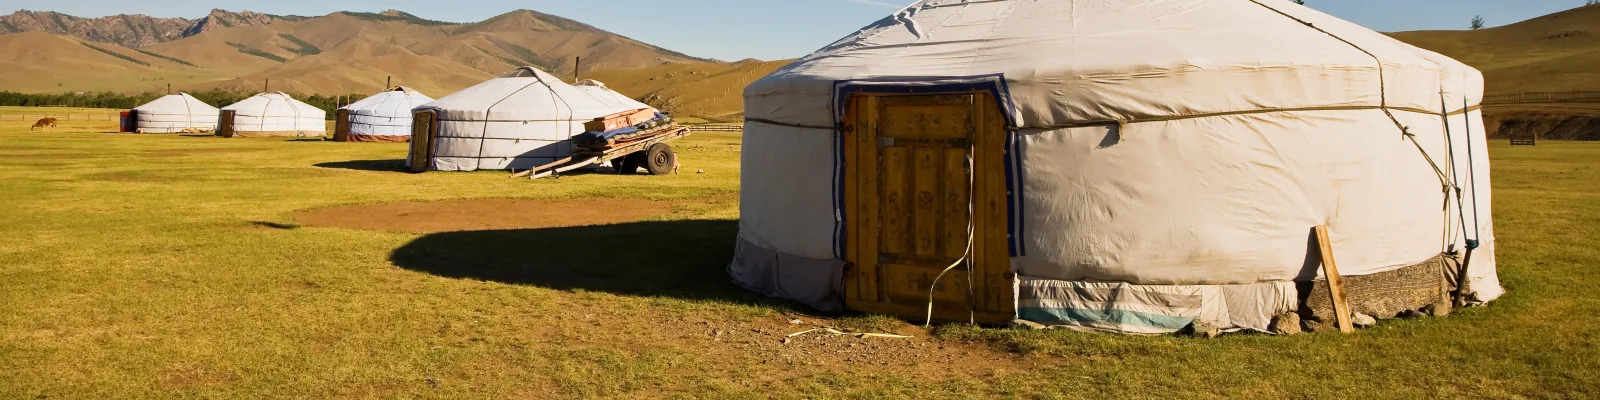 Reise til Mongolia: Utforsk Det Uutforskede